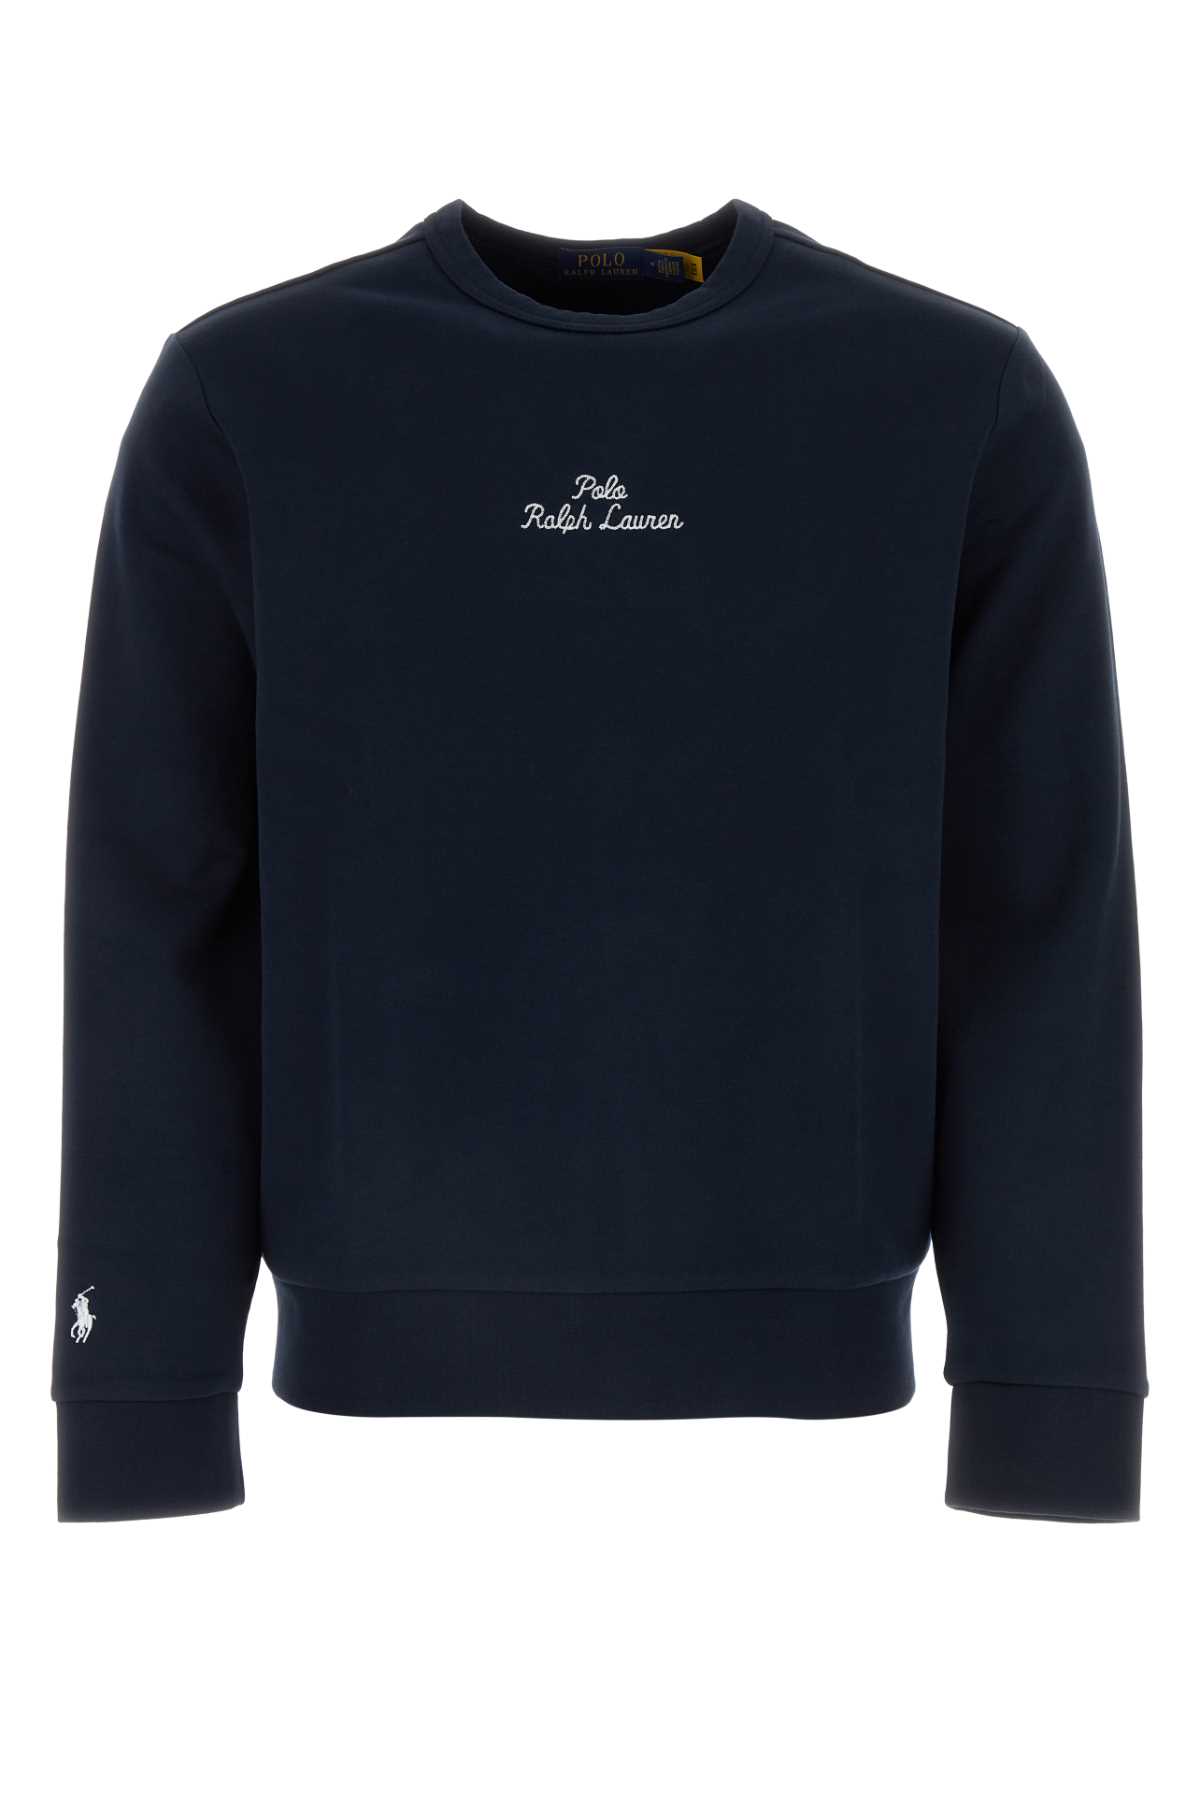 Polo Ralph Lauren Dark Blue Cotton Blend Sweatshirt